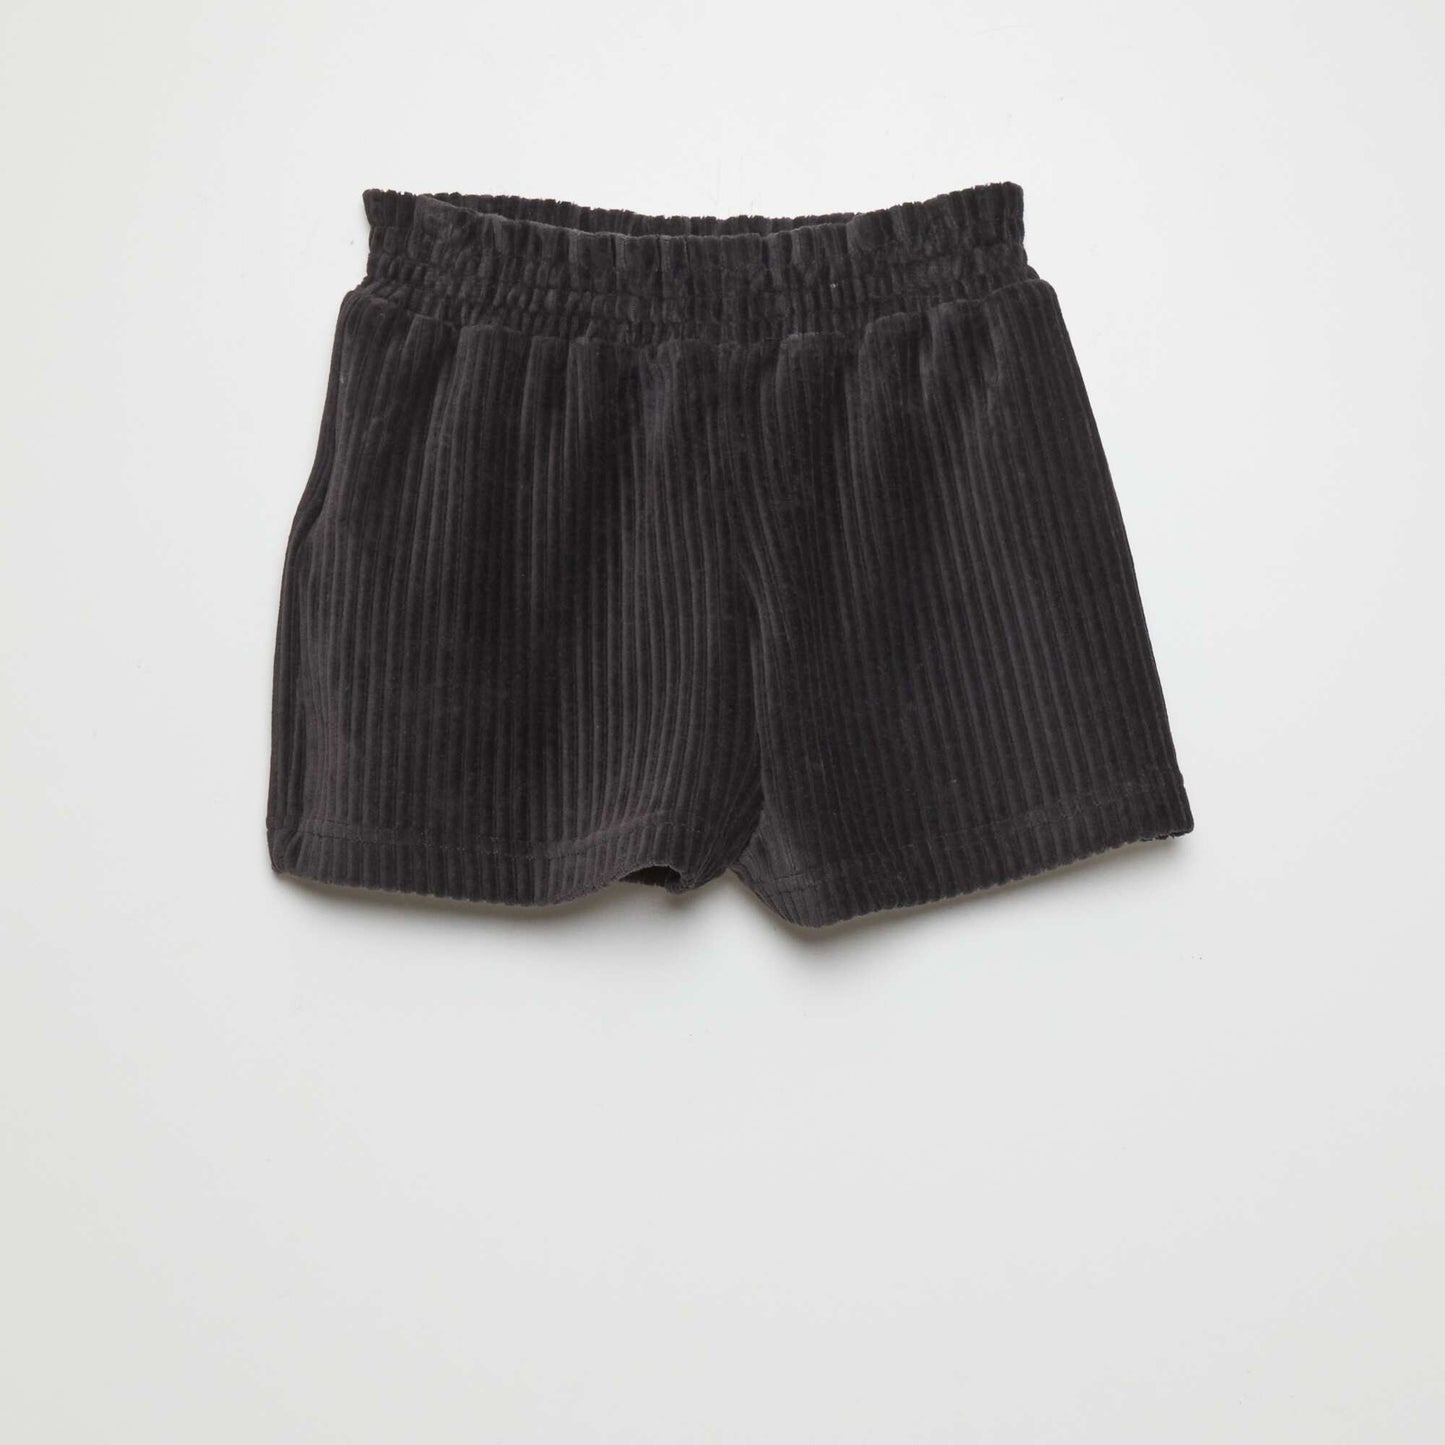 Velour knit shorts BLACK